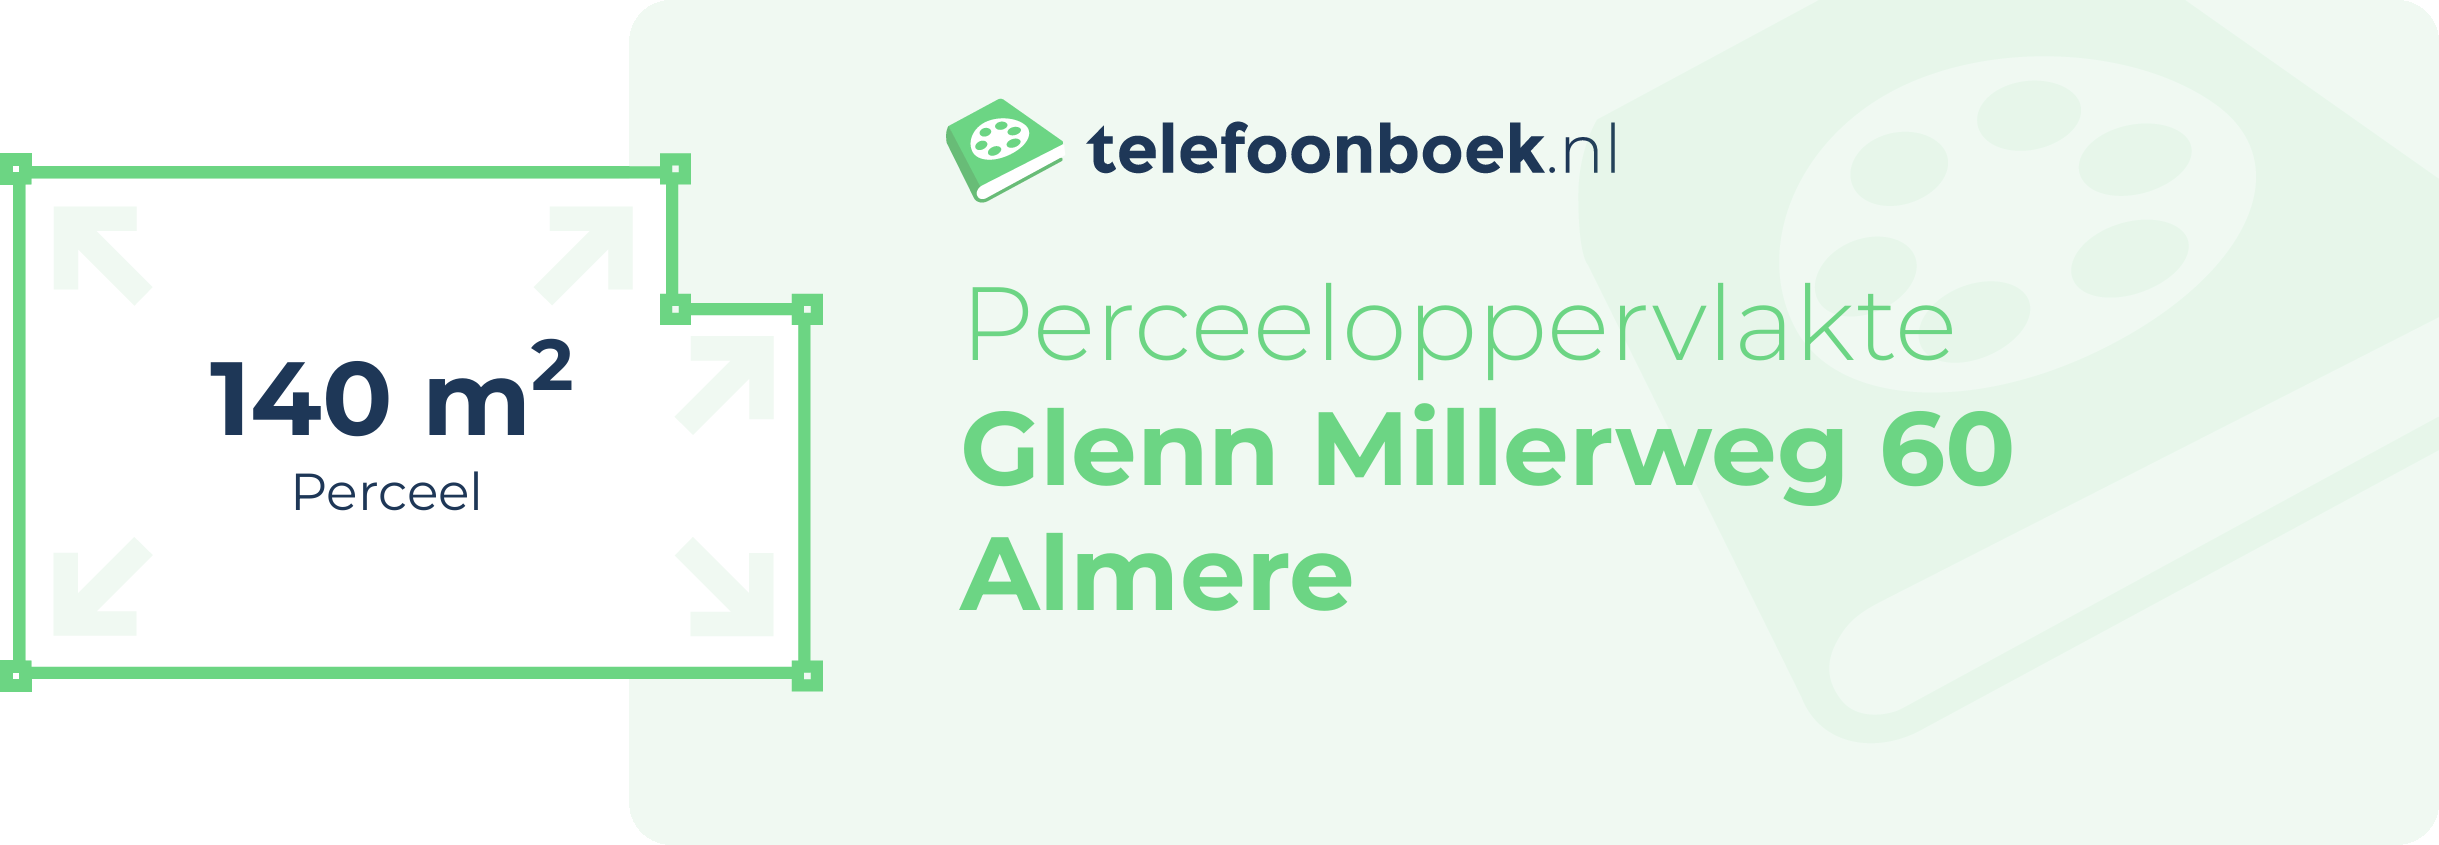 Perceeloppervlakte Glenn Millerweg 60 Almere